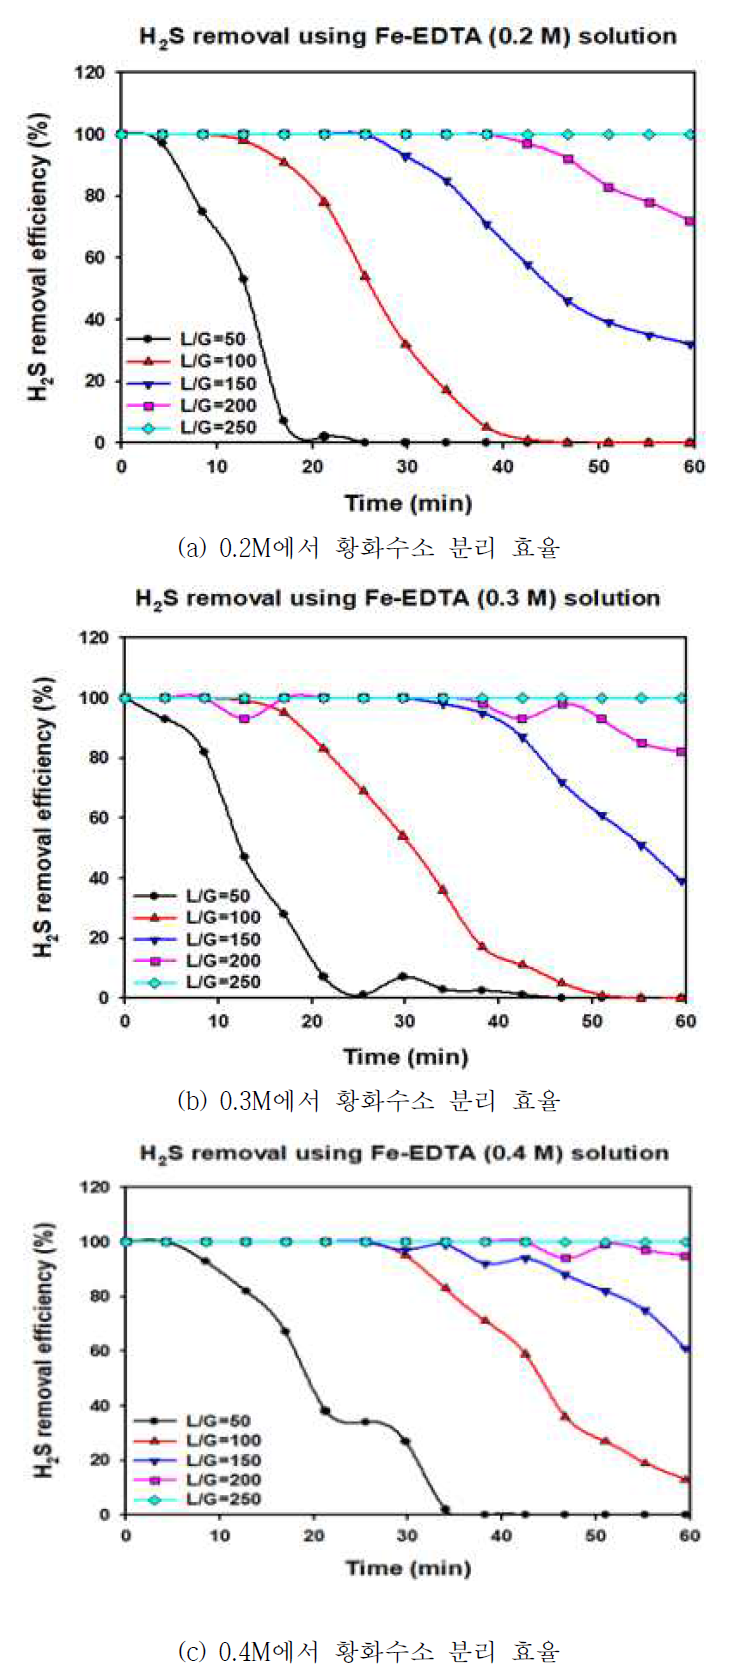 철 킬레이트 흡수제 농도 변화에 따른 황화수소 분리 효율